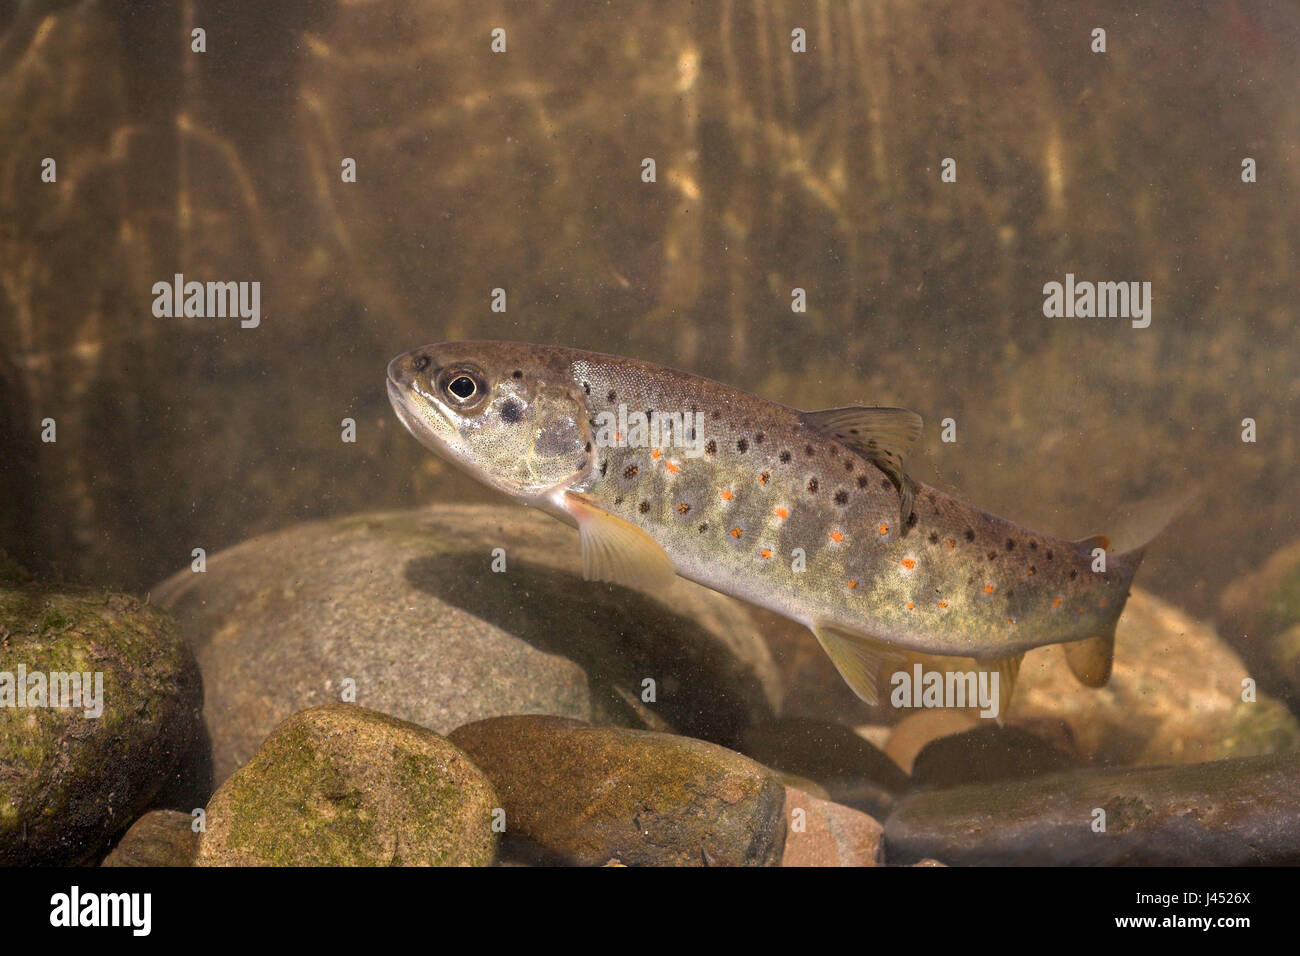 Foto de una trucha marrón nadando contra la corriente en el fondo de un arroyo Foto de stock